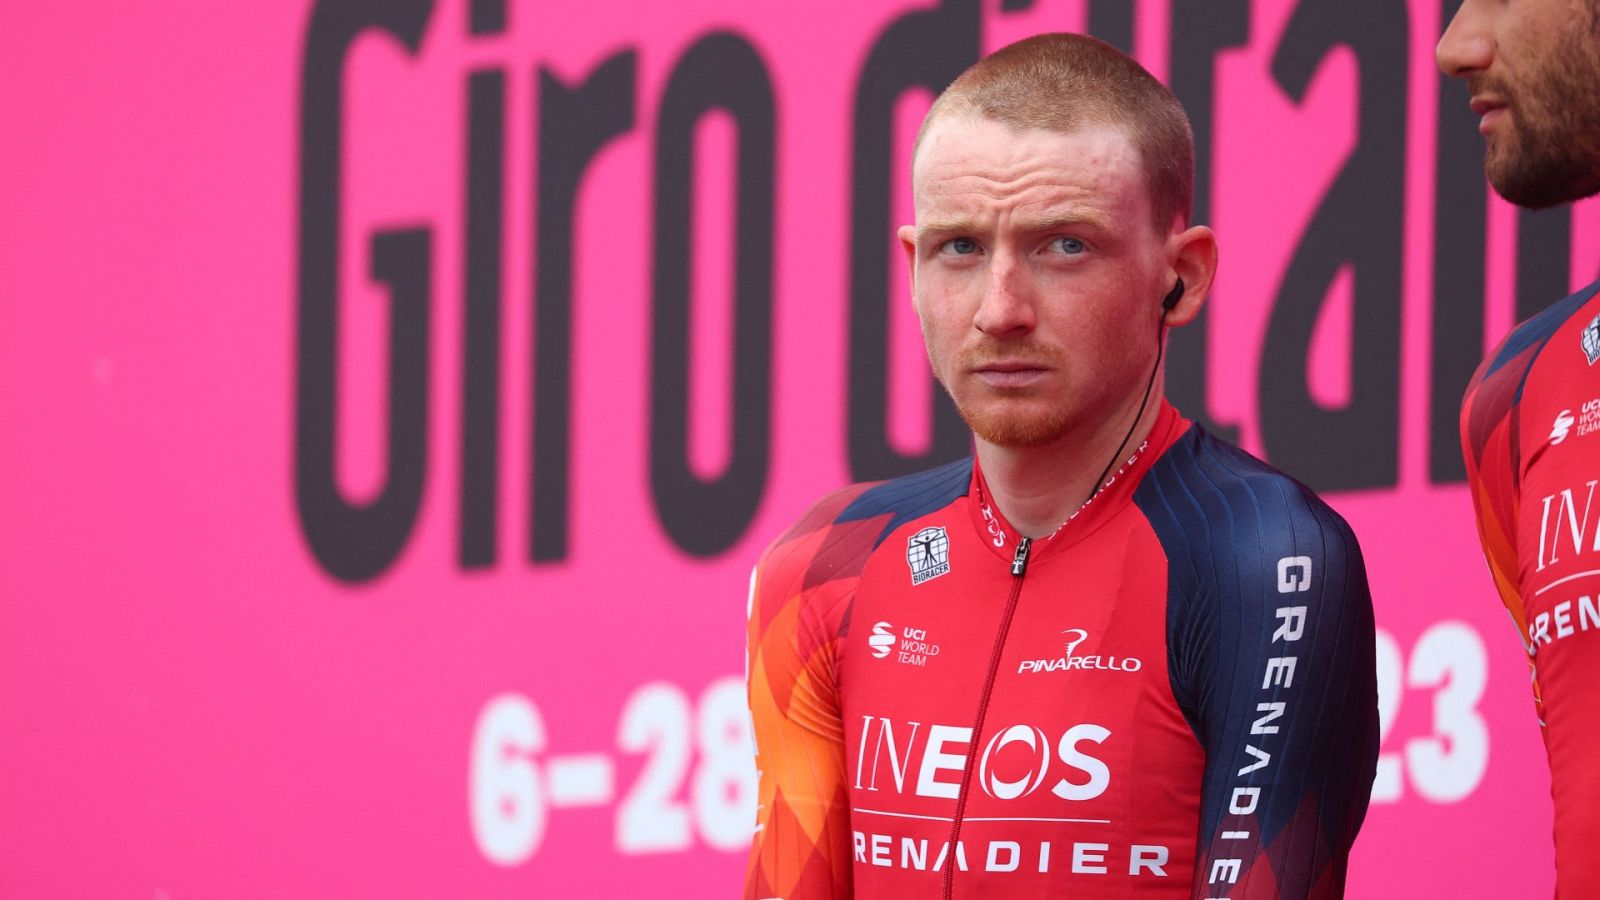 El británico Tao Geogeghan Hart, en la presentación del Giro.